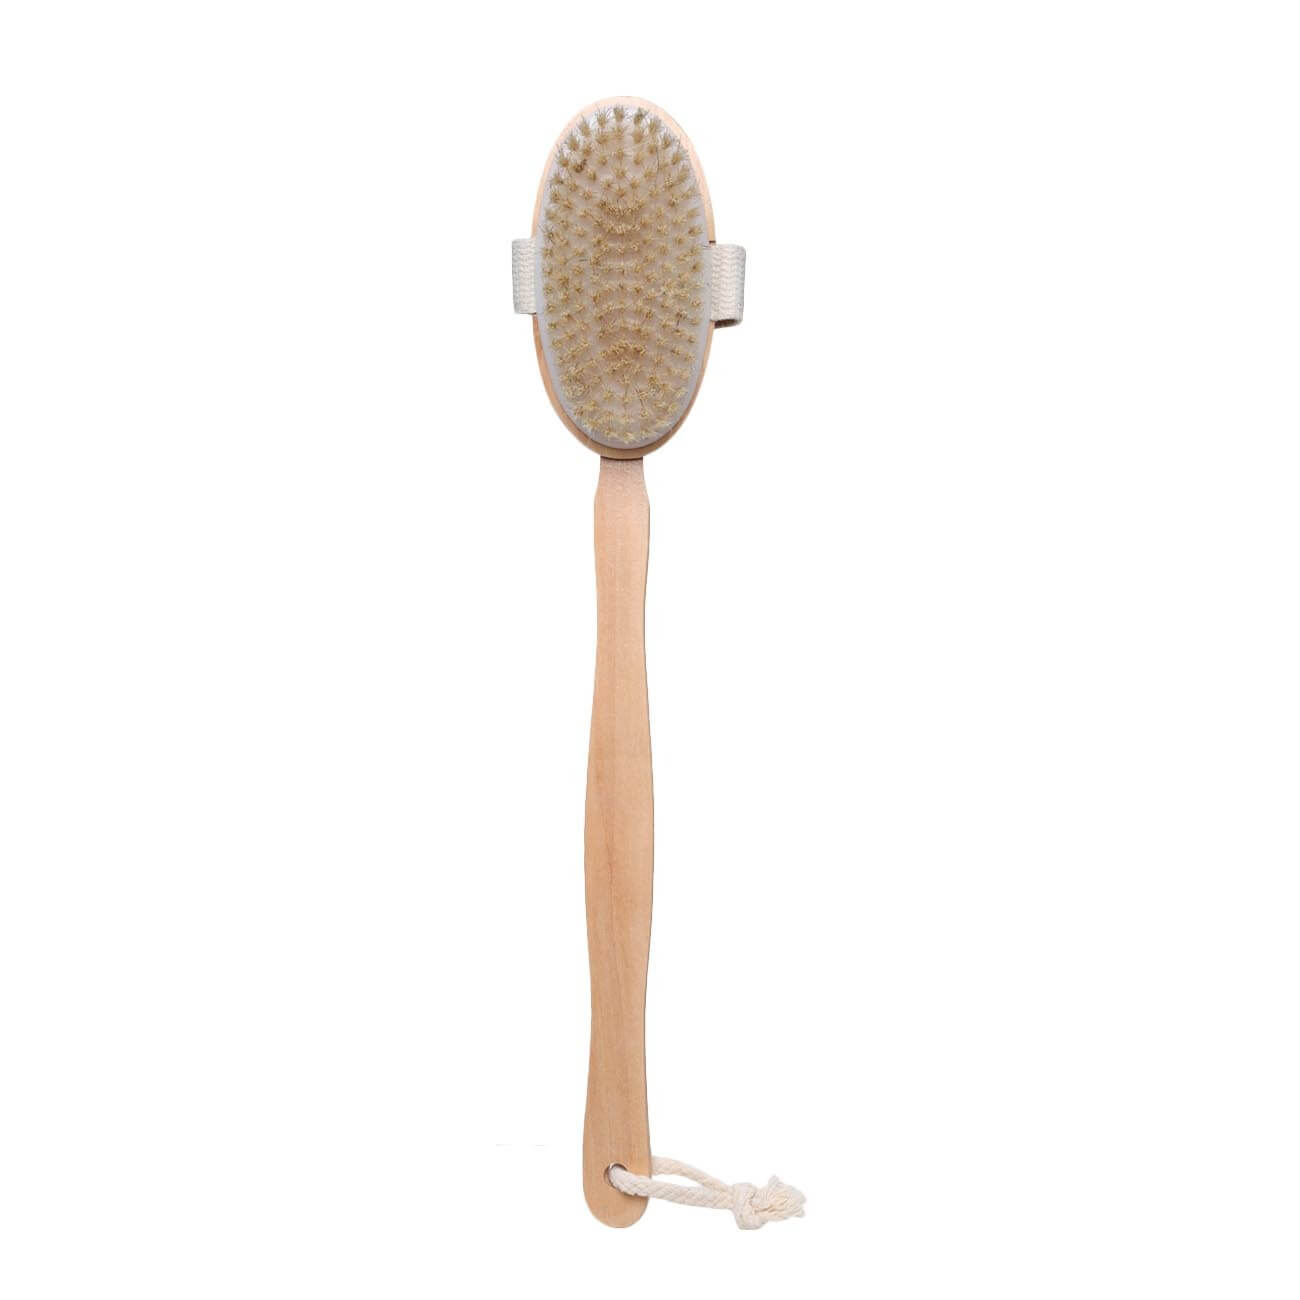 Щетка для сухого массажа, 40 см, с держателем, дерево/нейлон, Bamboo spa щетка для сухого массажа